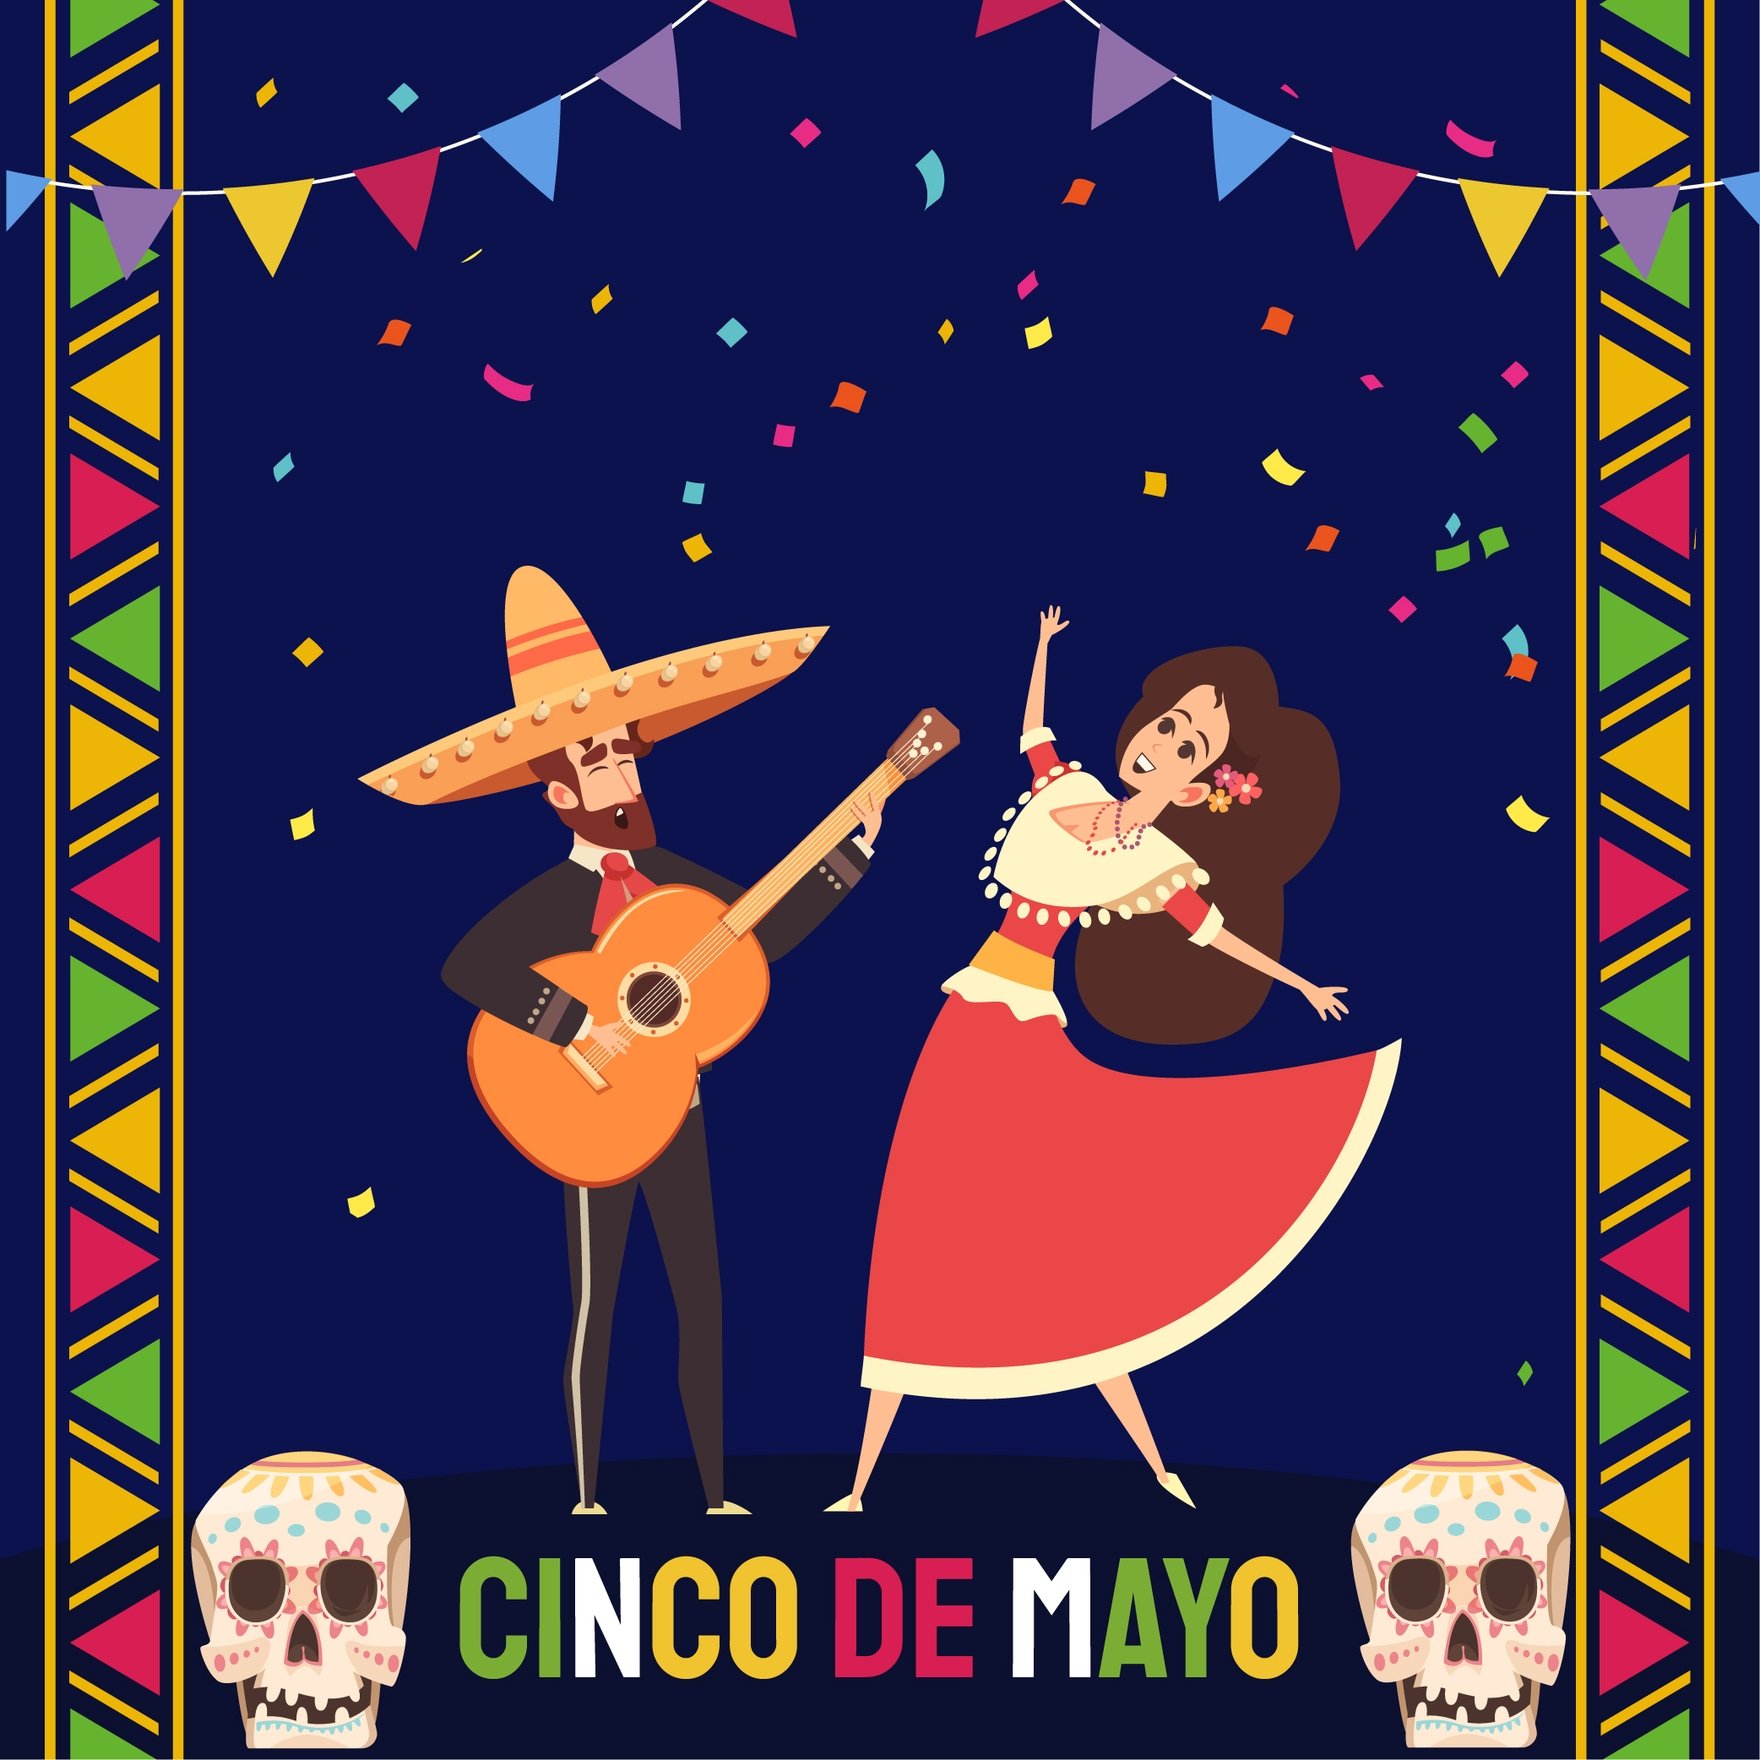 Free Happy Cinco De Mayo Festive